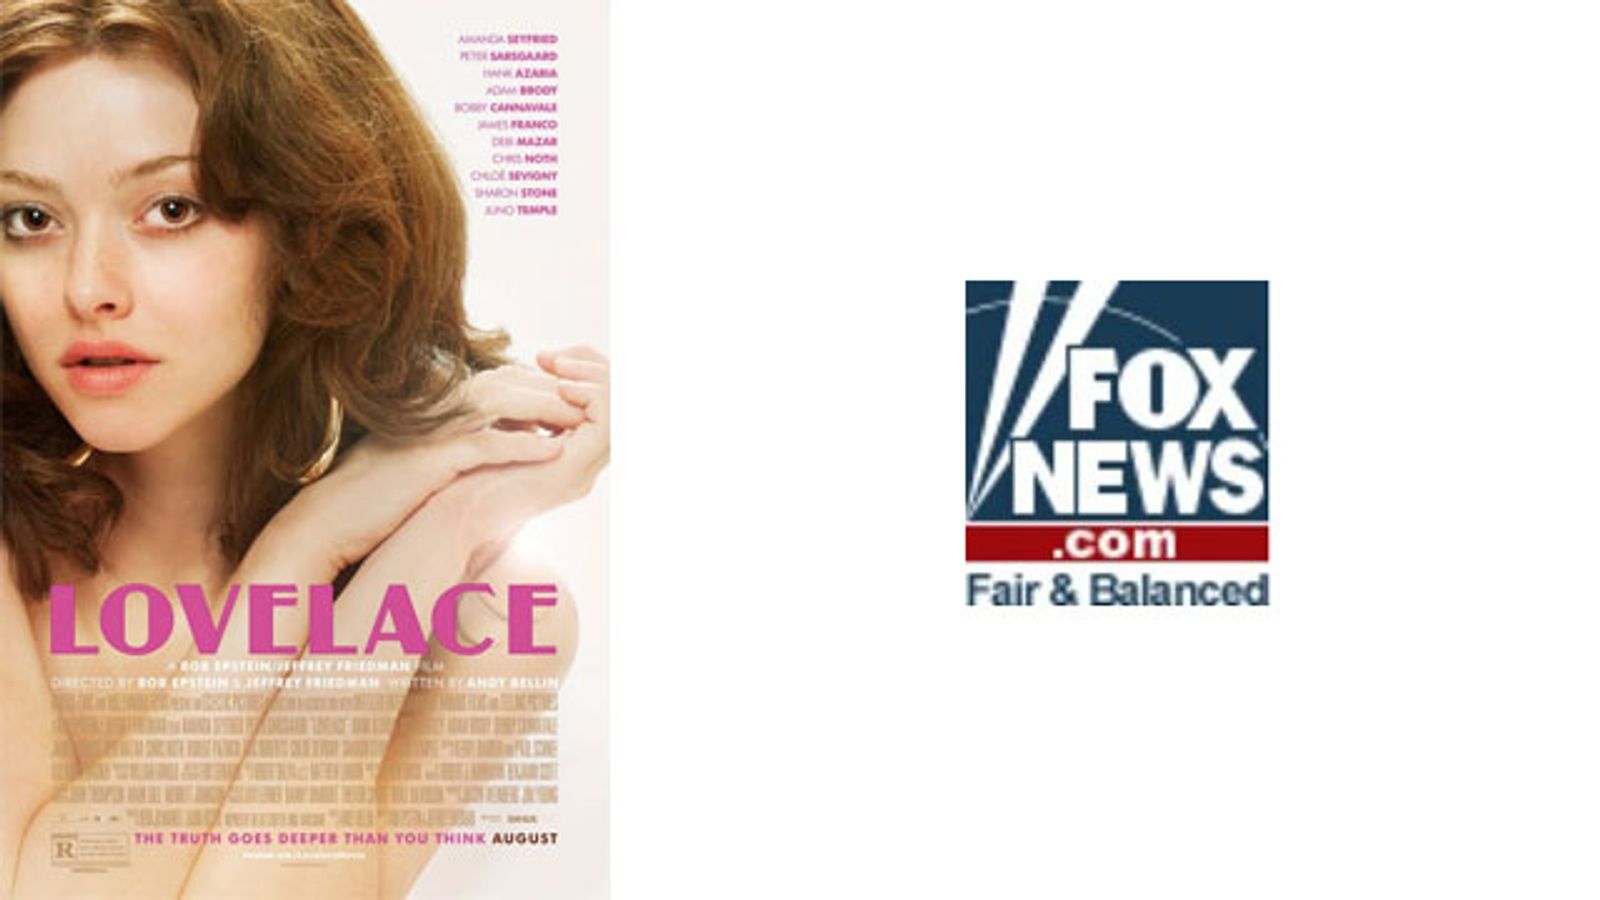 Picking Apart Fox News' Column on 'Lovelace'